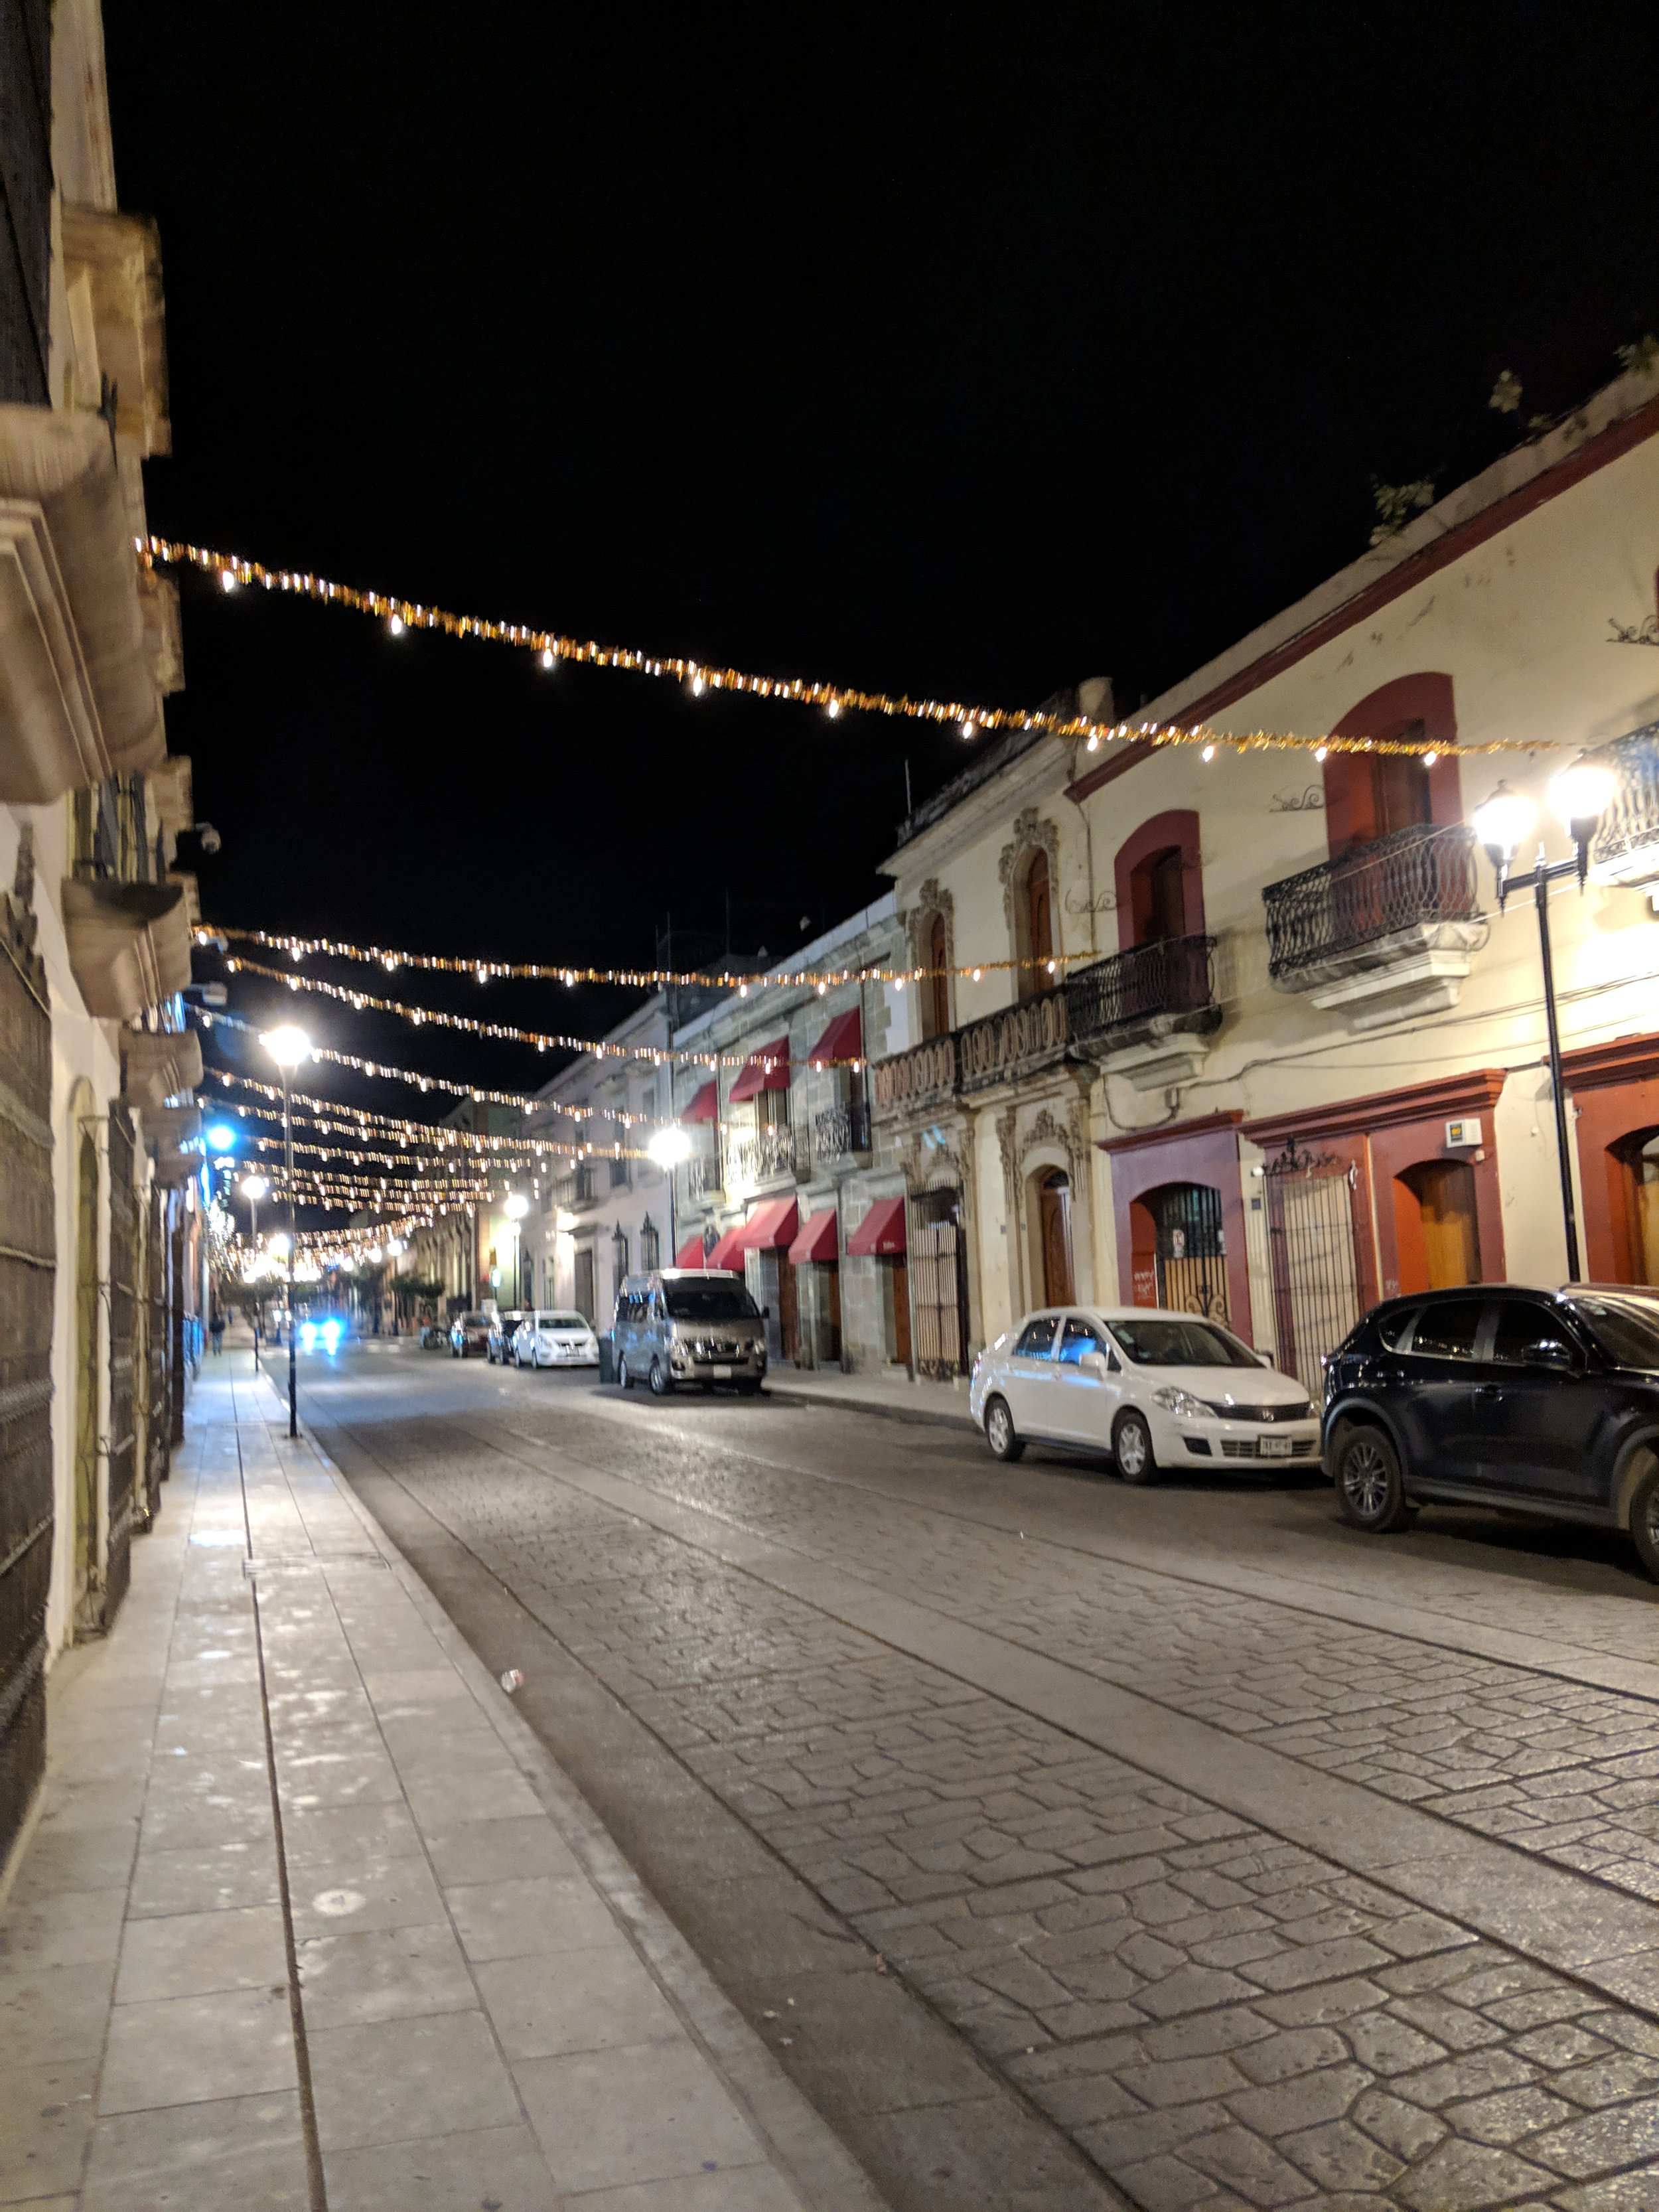 Holiday lights in Oaxaca